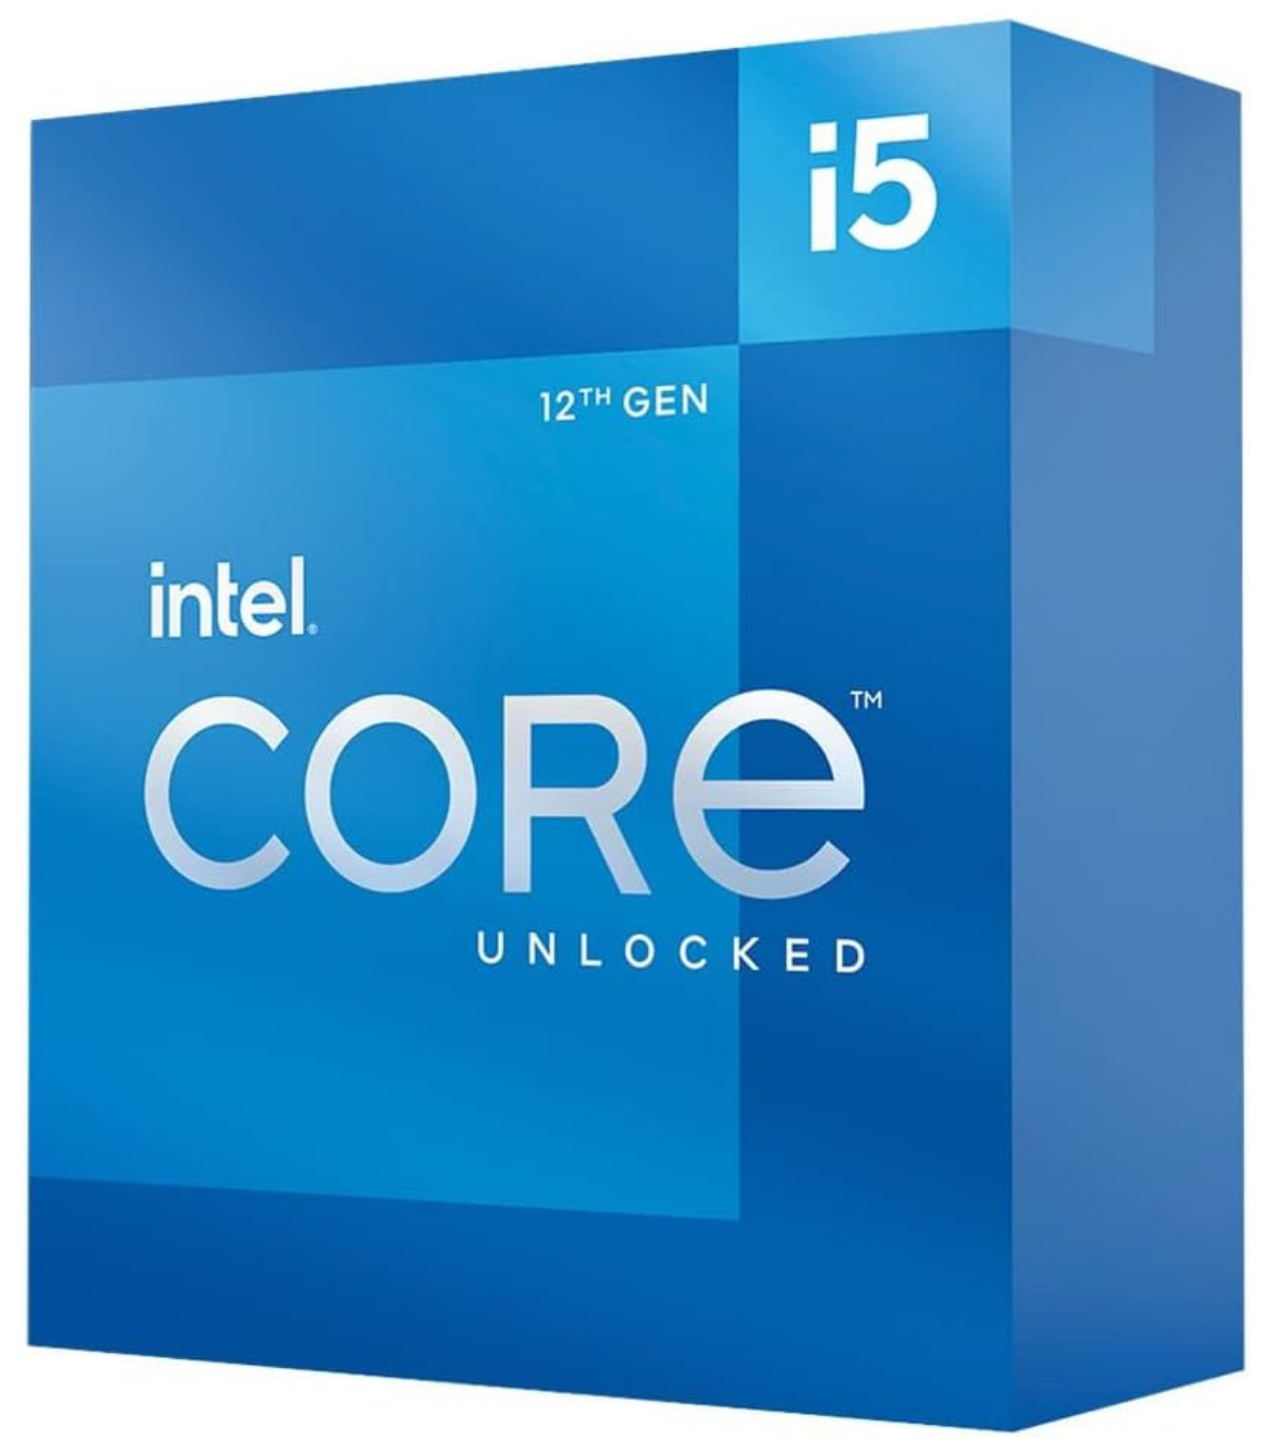 Intel Core i5-12600K Desktop Processor $169.99